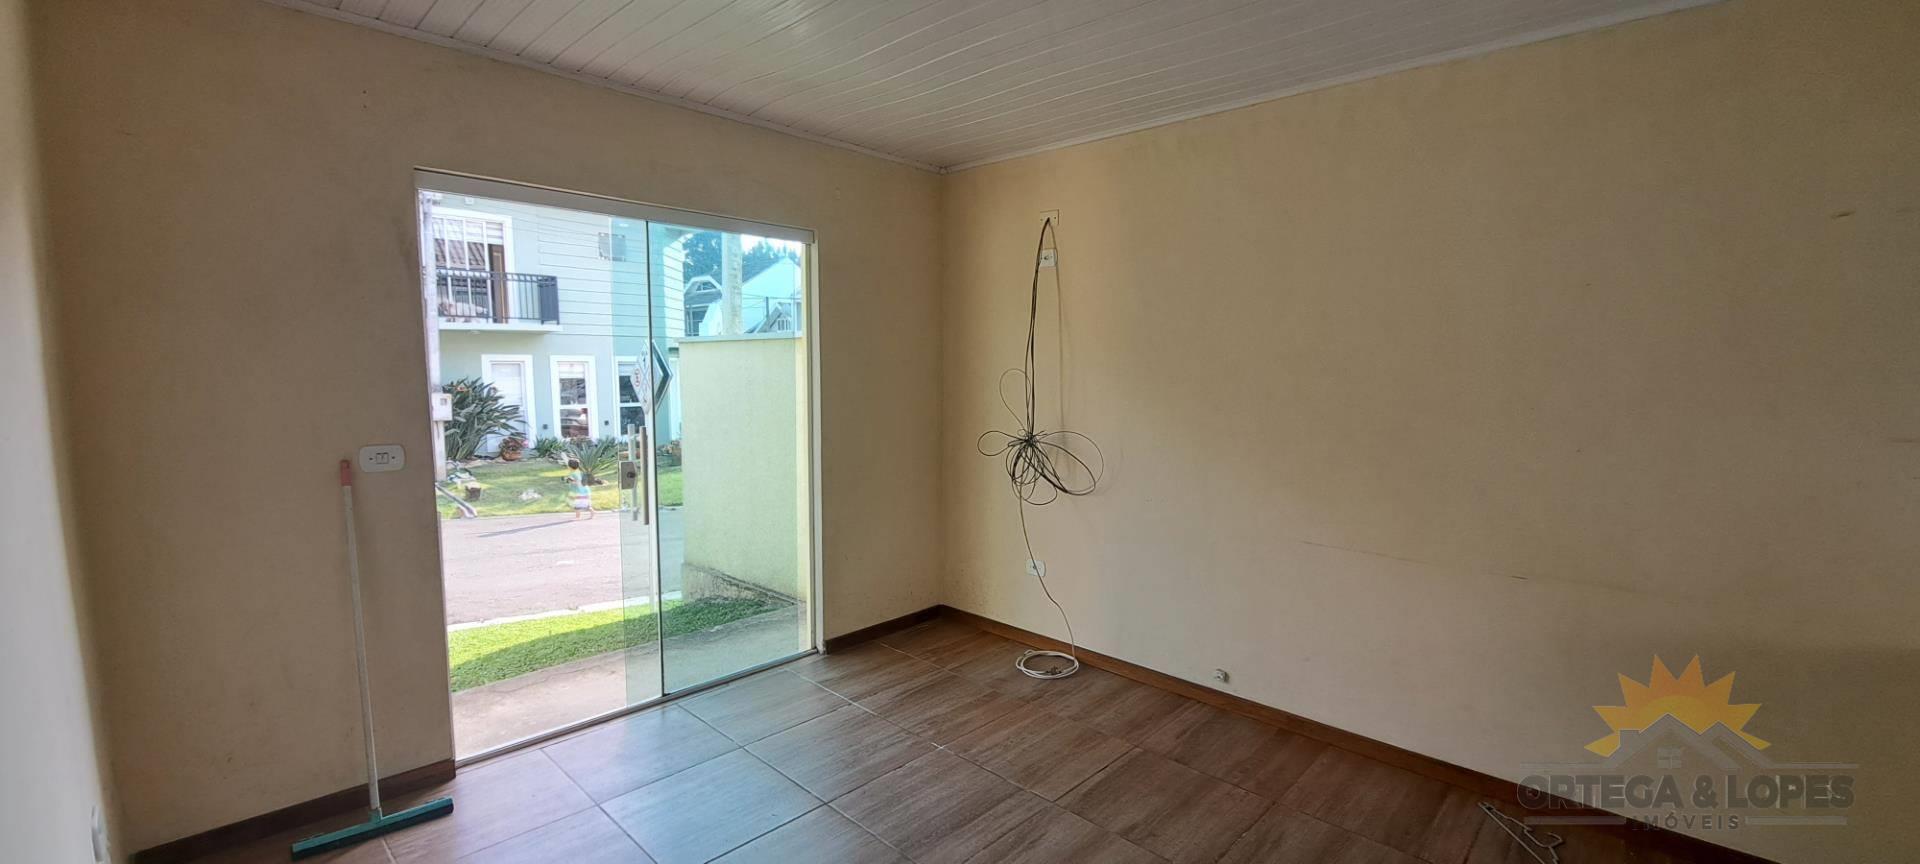 Casa Residencial para venda no bairro Cachoeira em Curitiba/PR com 120m² por R$ 360.000,00